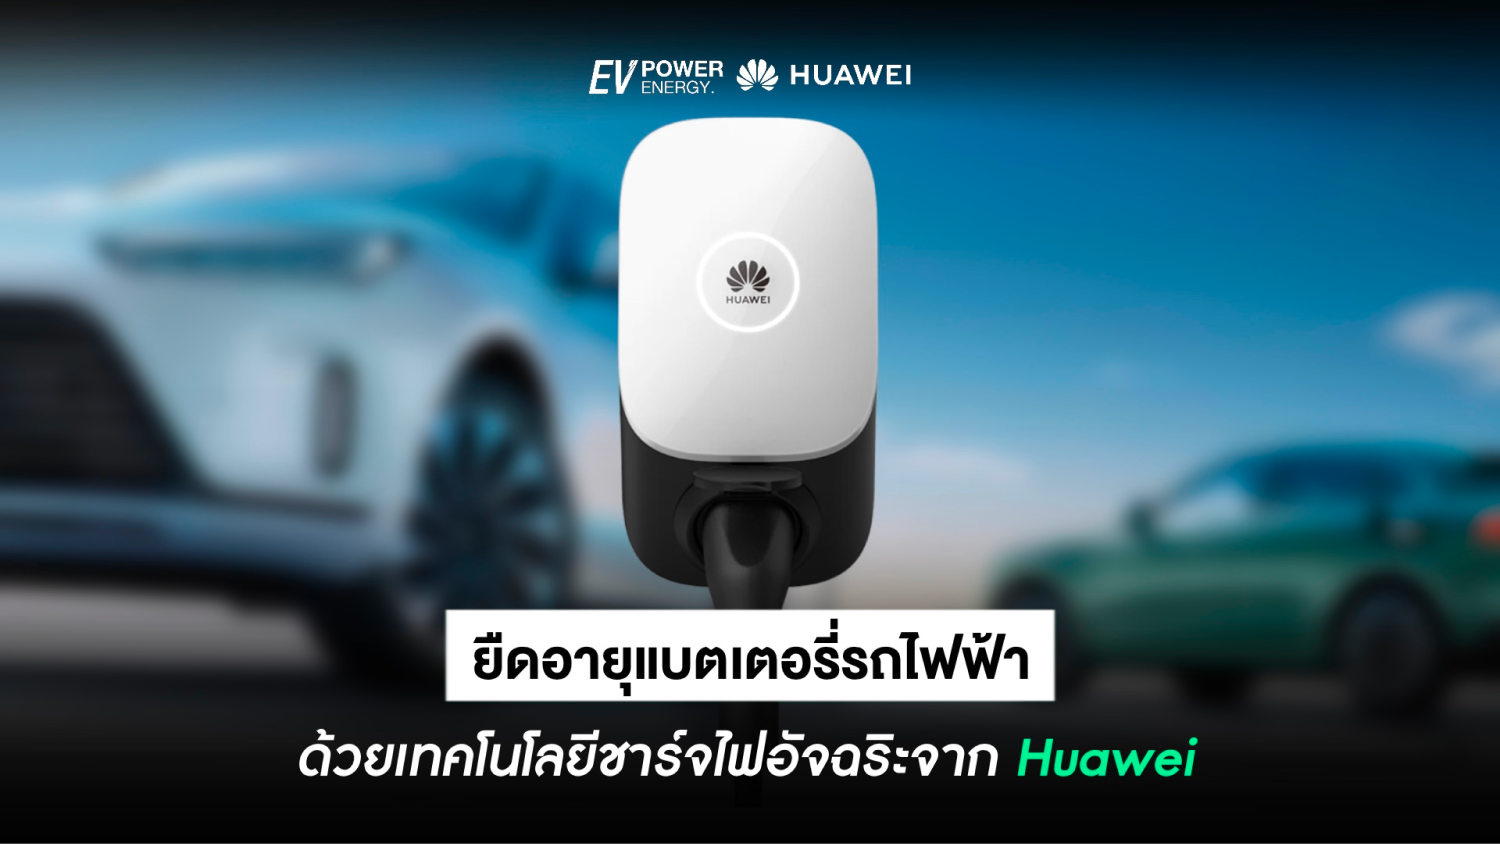 ยืดอายุแบตเตอรี่รถไฟฟ้า ด้วยเทคโนโลยีการชาร์จอัจฉริยะ จาก Huawei Smart Charger